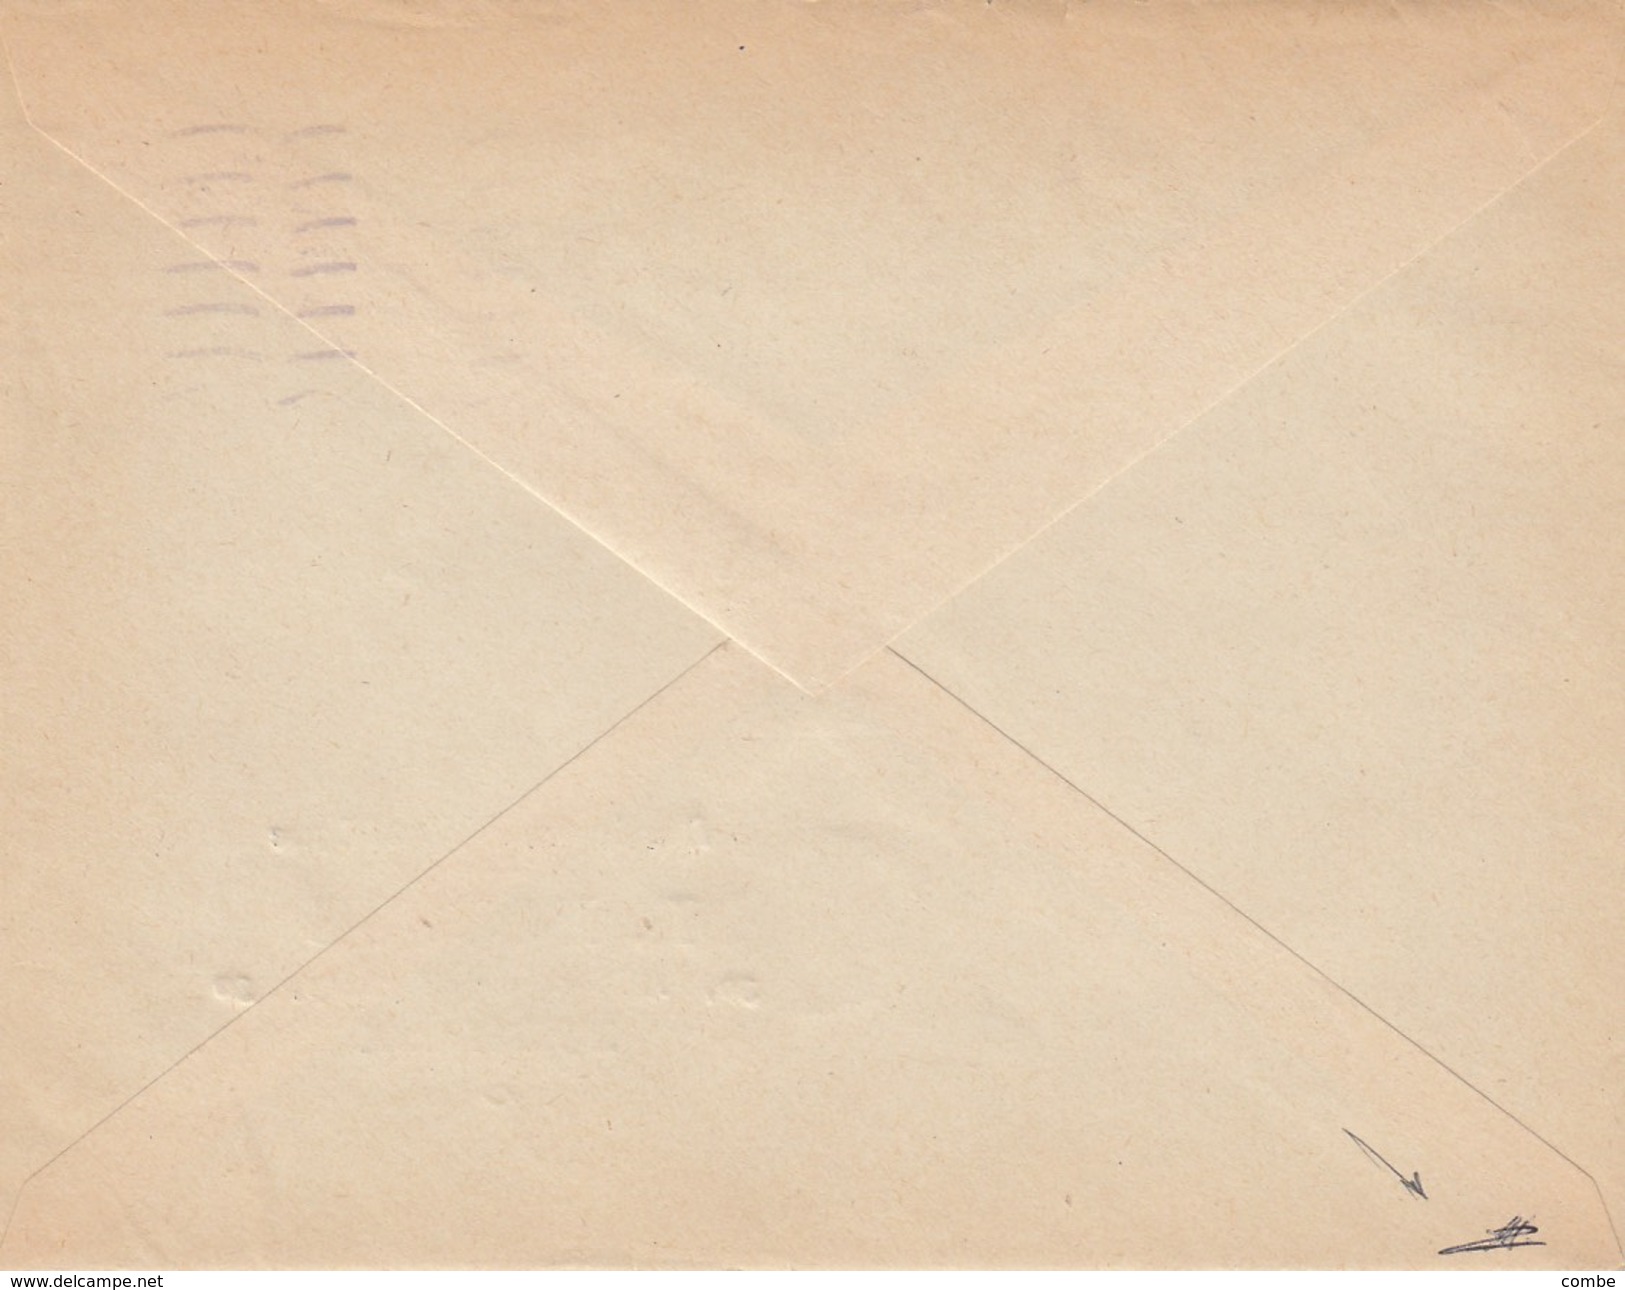 LETTRE.  2 9 1944. PETAIN 1.50 R.F.  BORDEAUX  +  VIGNETTE SECOURS NATIONAL BARRAGE NATIONAL CONTRE LA MISERE. SIGNATURE - Lettres & Documents